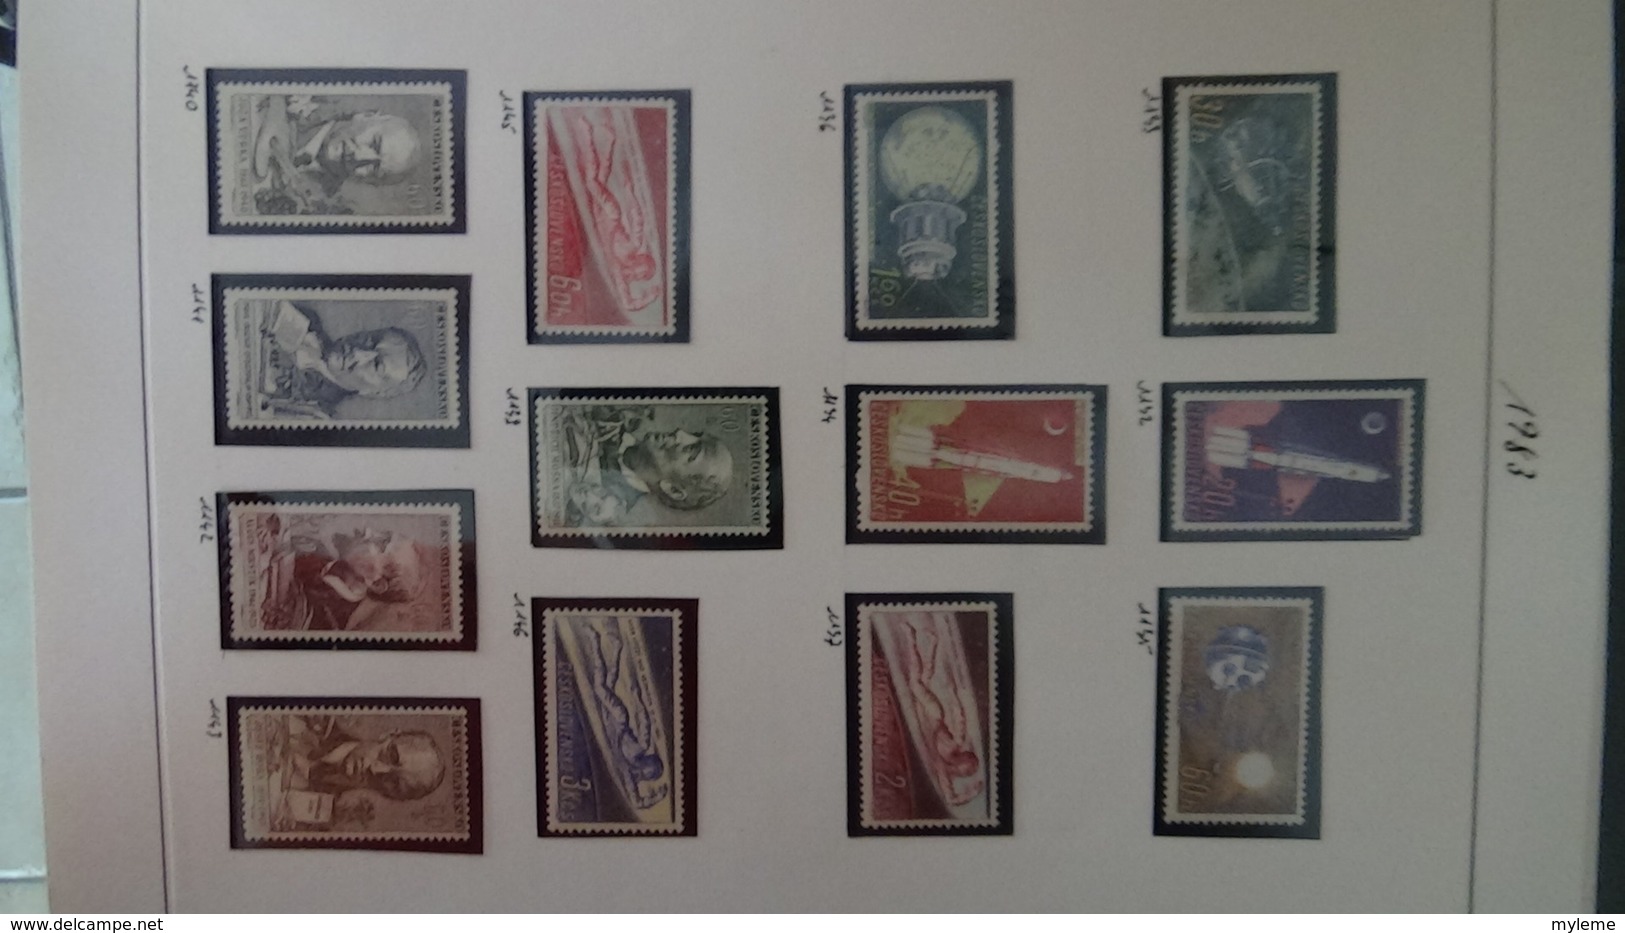 Collection de timbres Tchecoslovaquie ** N° 1037 à 1613  . Voir commentaires